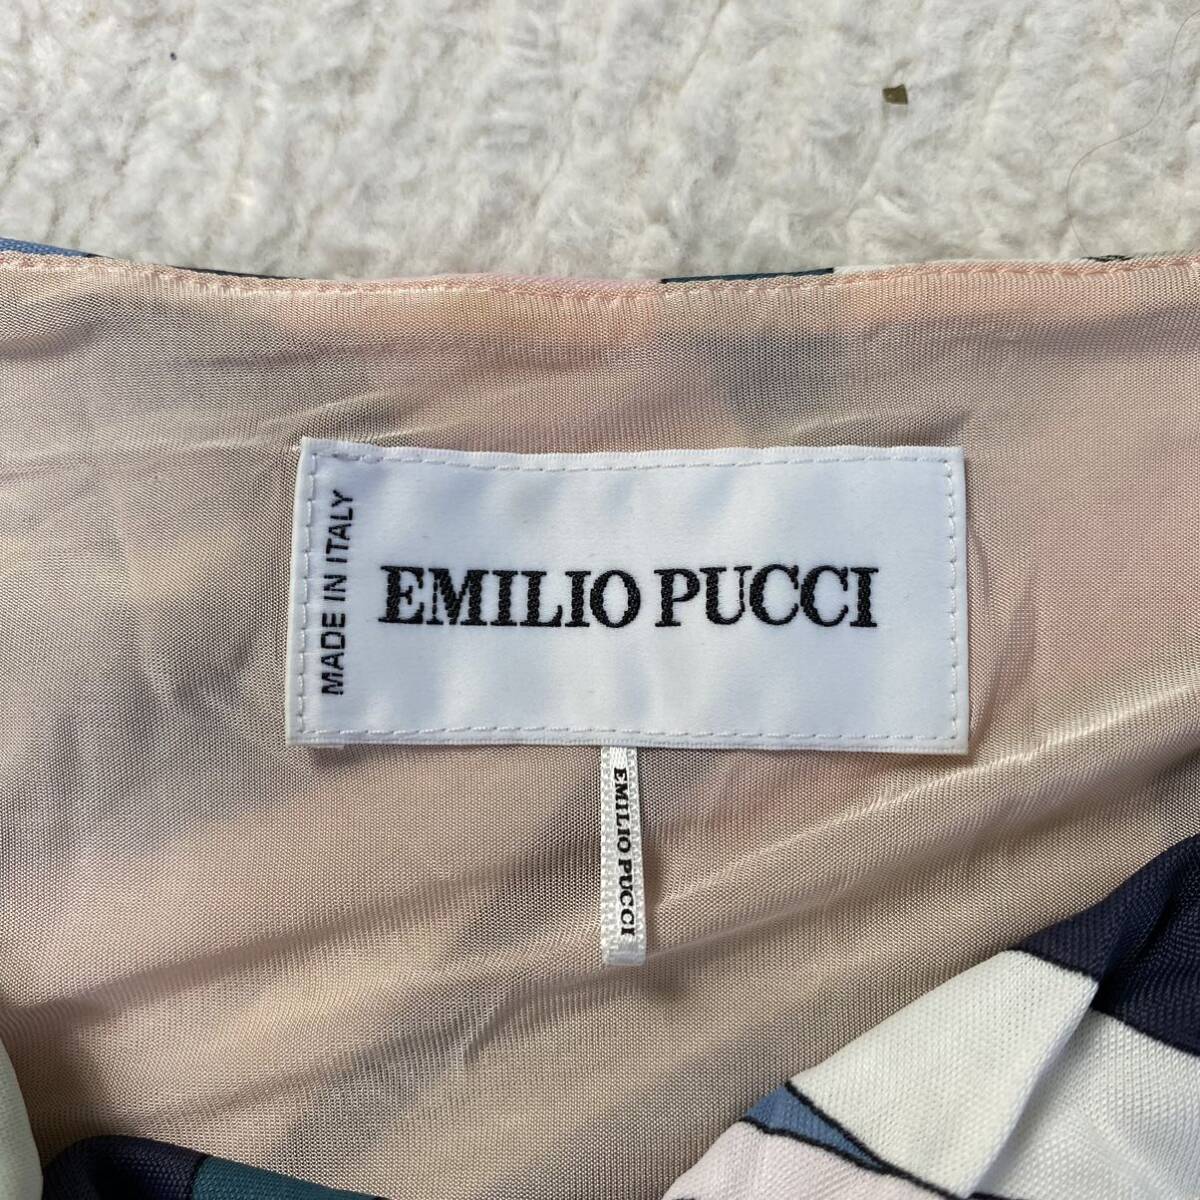 Emilio Pucci Emilio Pucci длина по колено pchi рисунок общий рисунок длинный рукав многоцветный dore-p Logo эластичность есть подкладка есть действующий бирка 